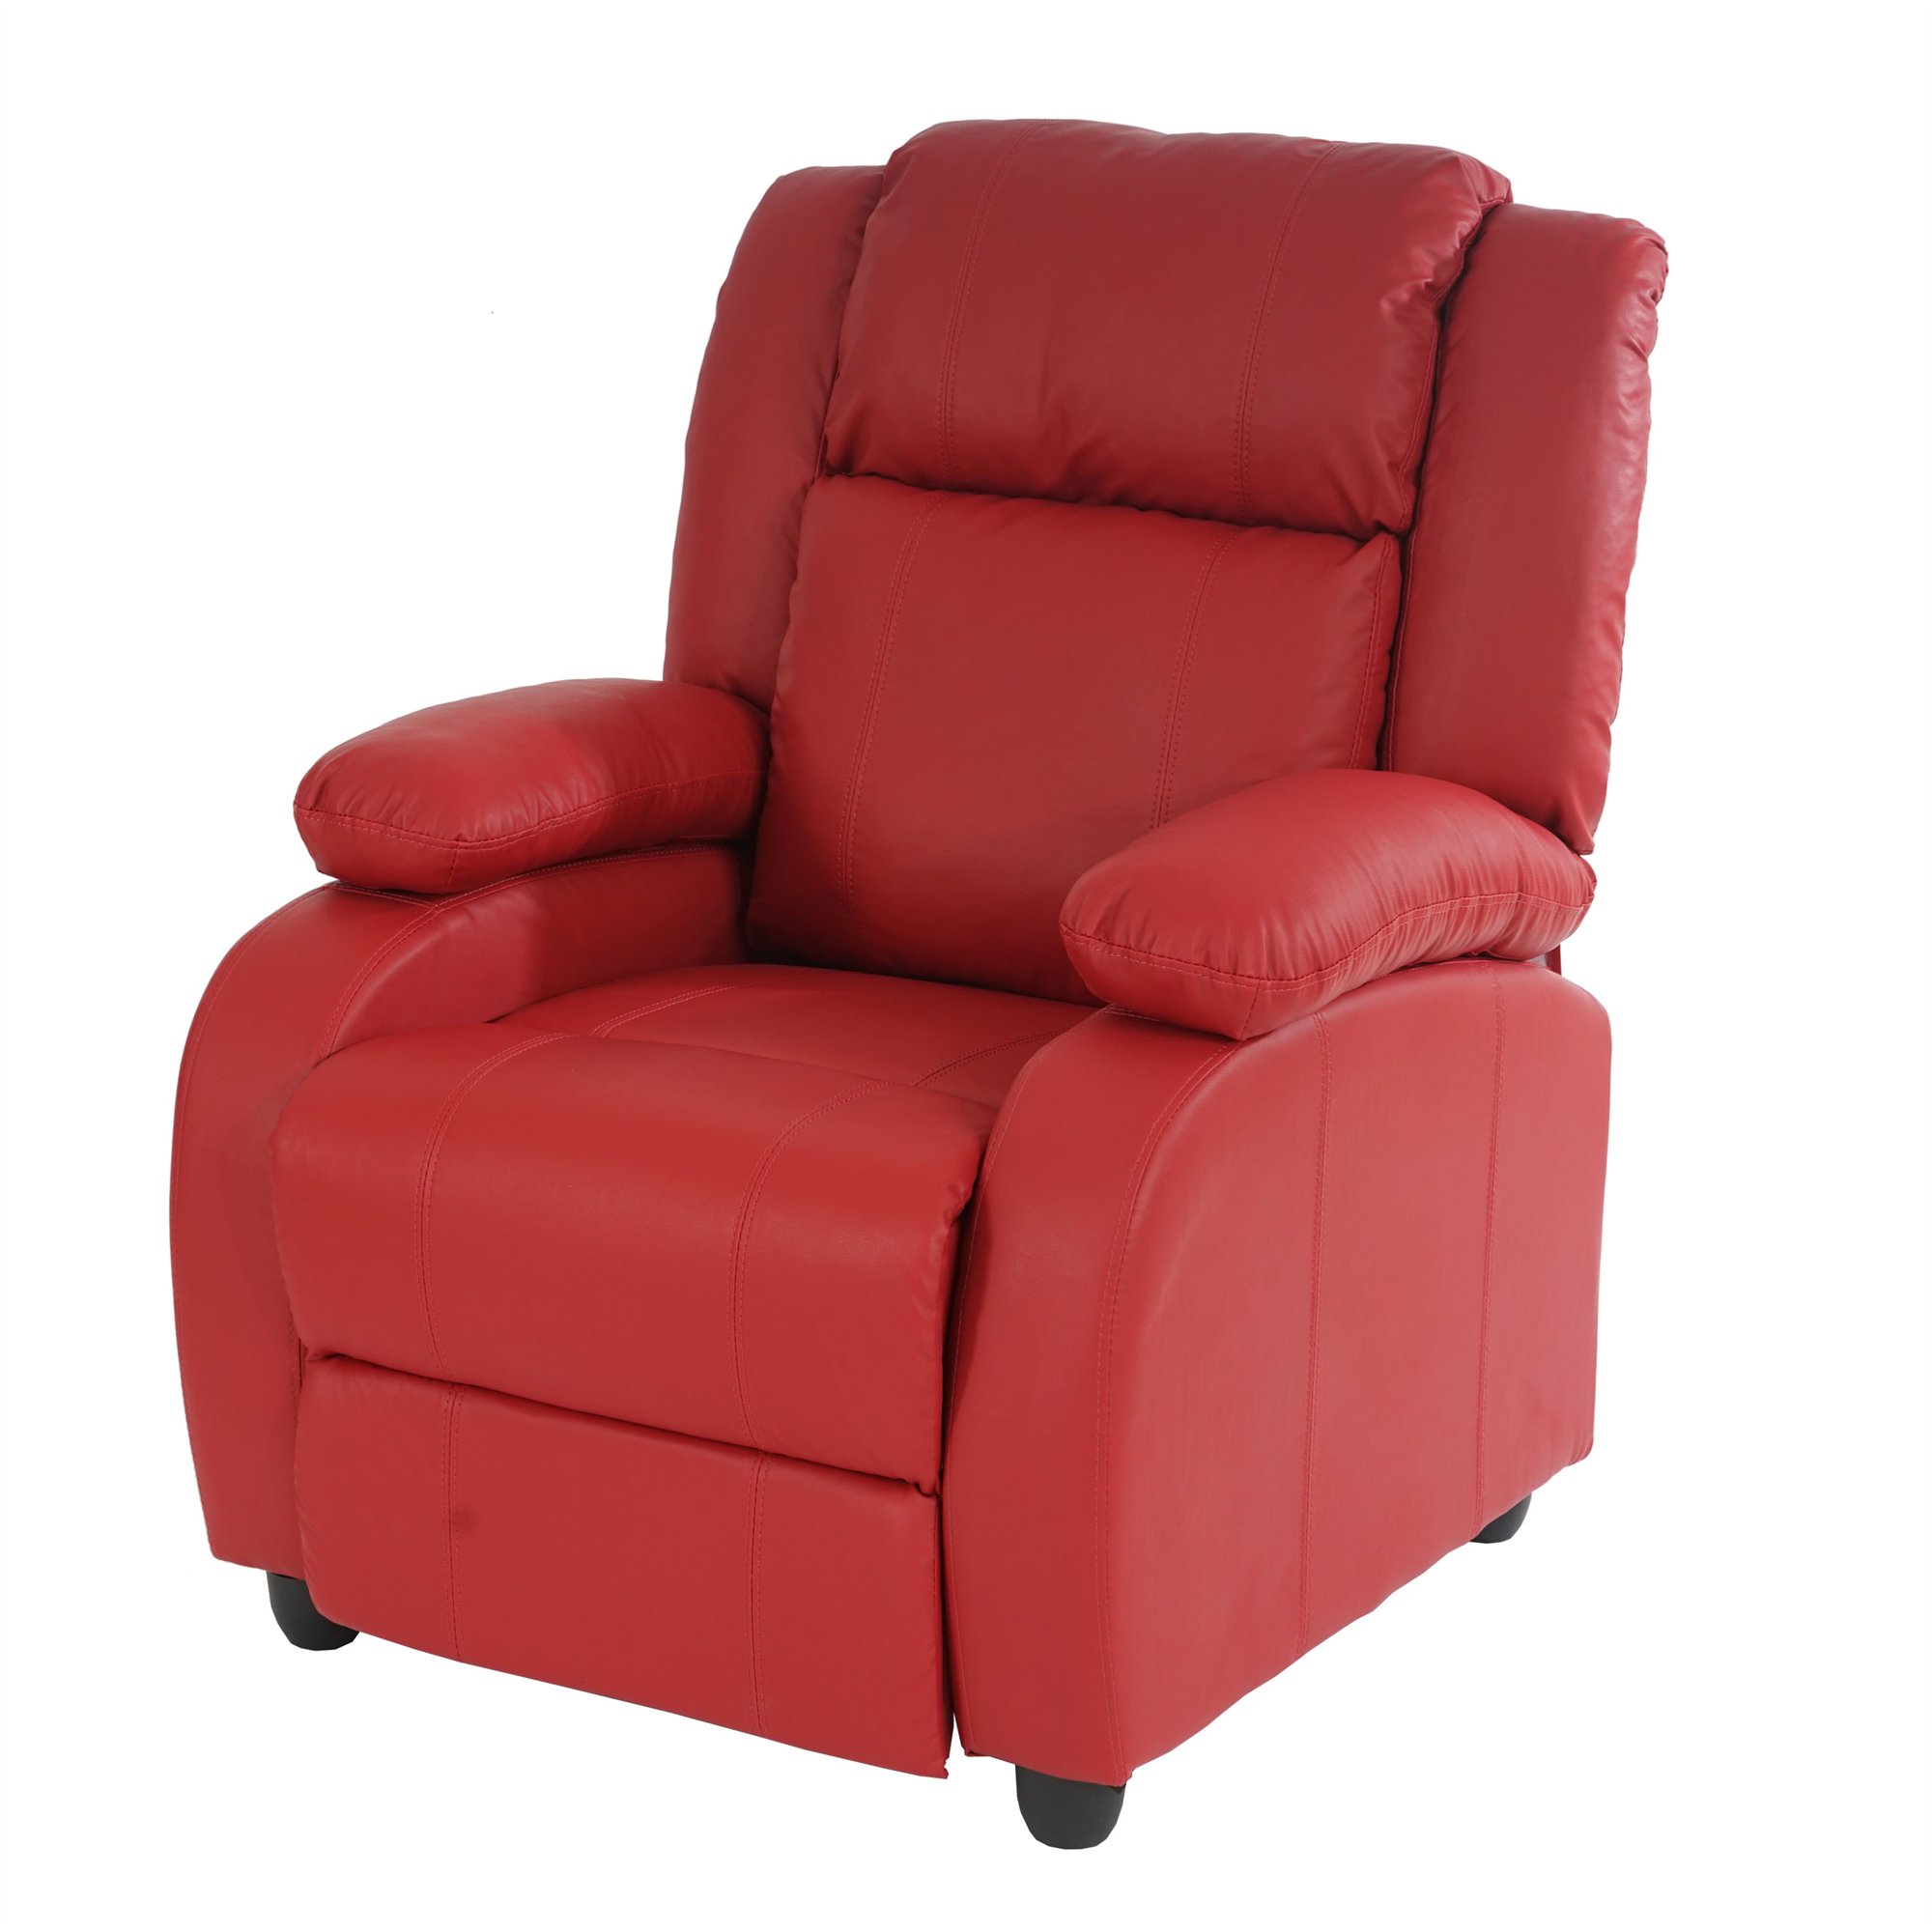 Sillon Relax Reclinables LINCON, Gran acolchado y comodidad, en color Rojo